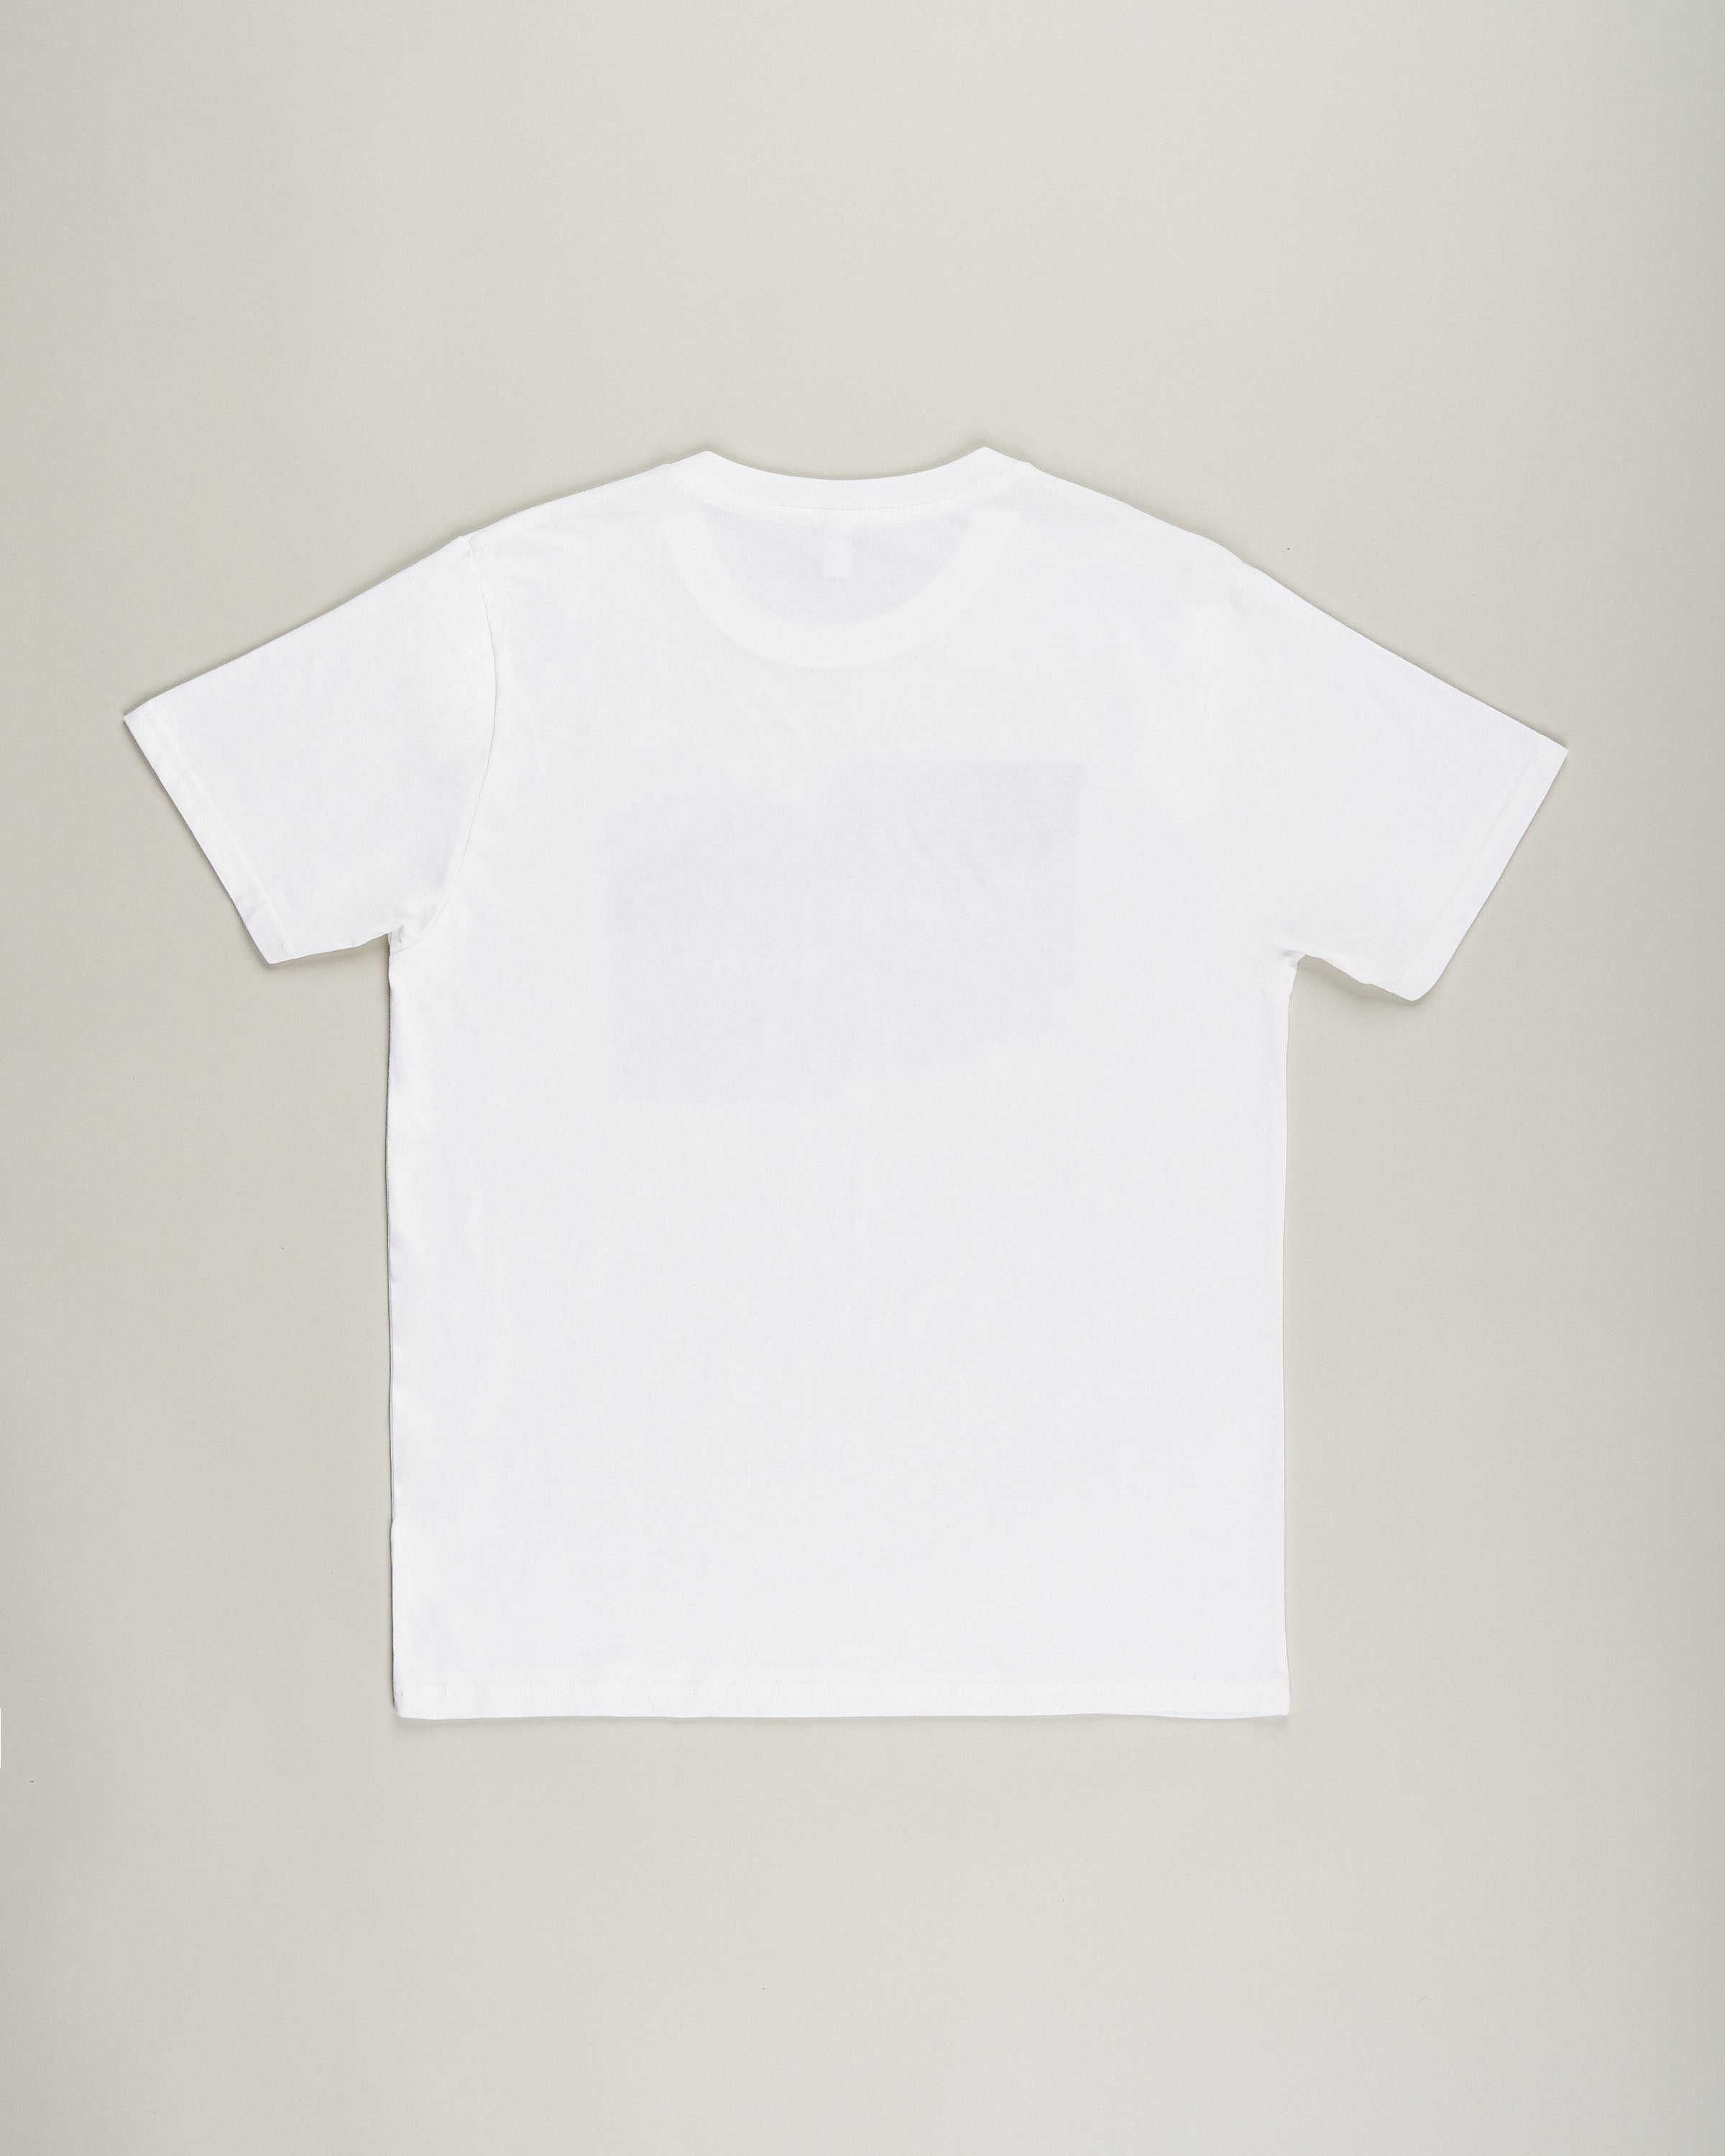 Time Warp Design Shirt, white